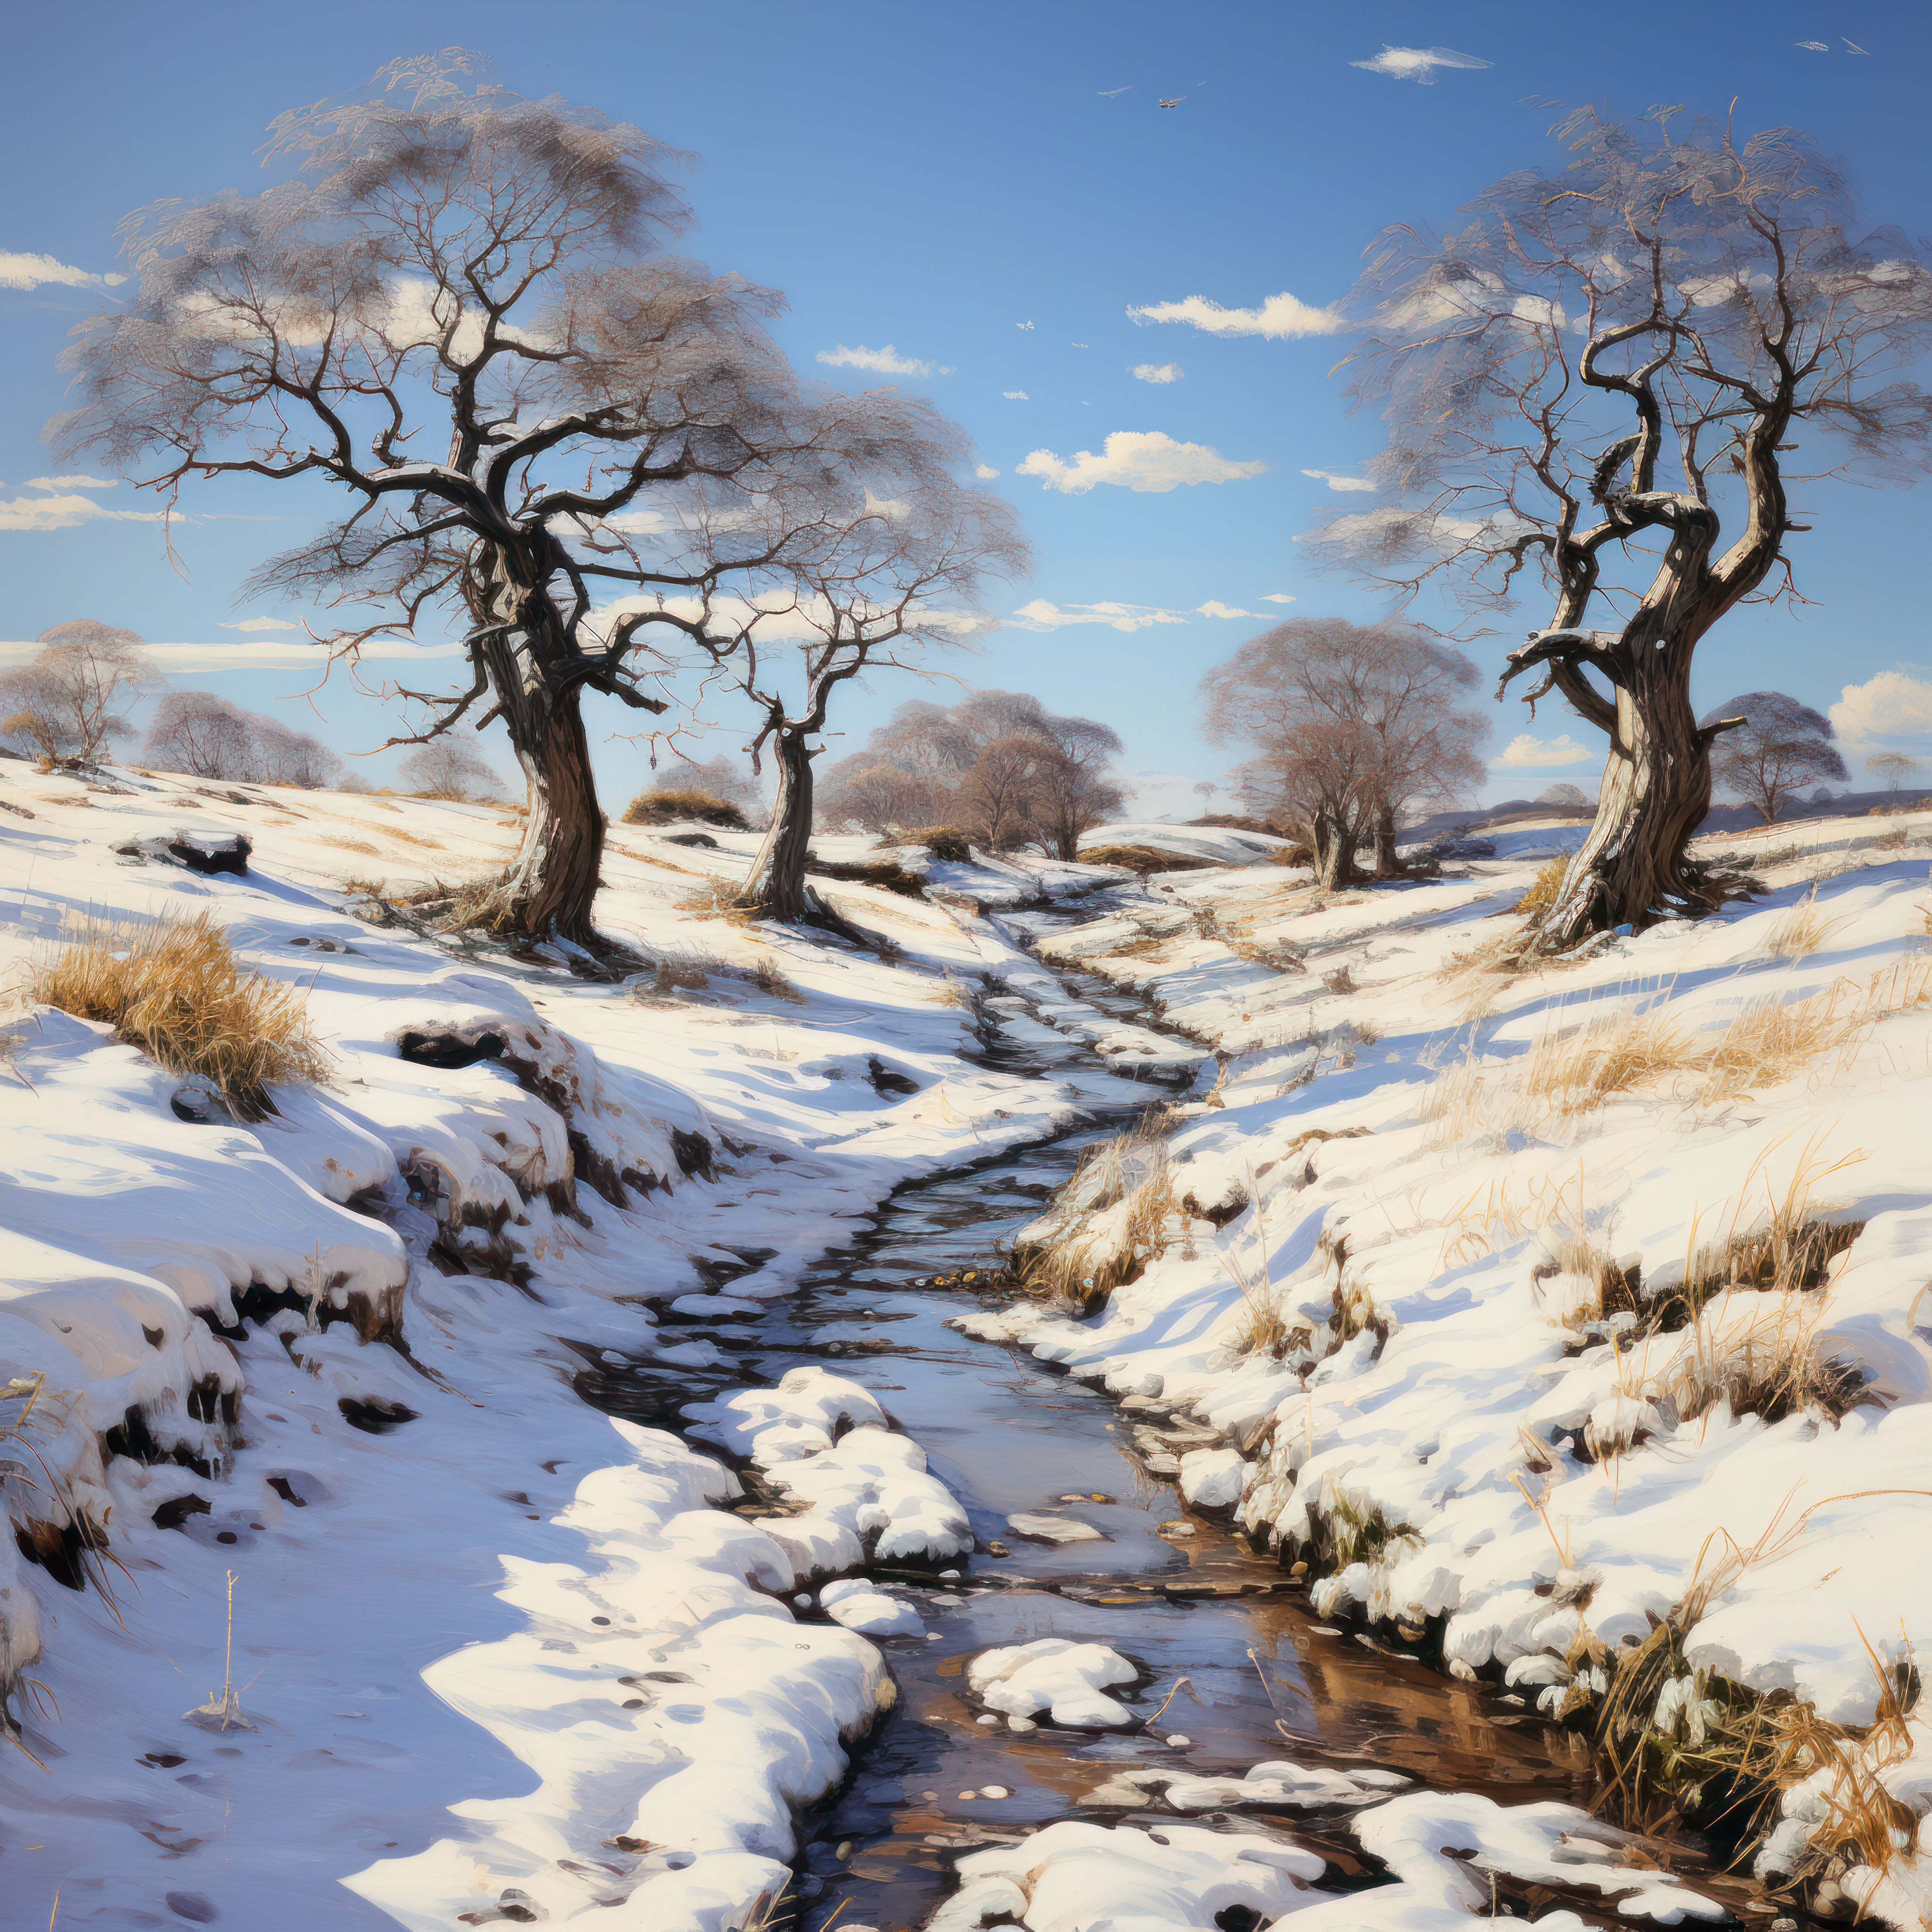 Winter landscape by Shivalesca